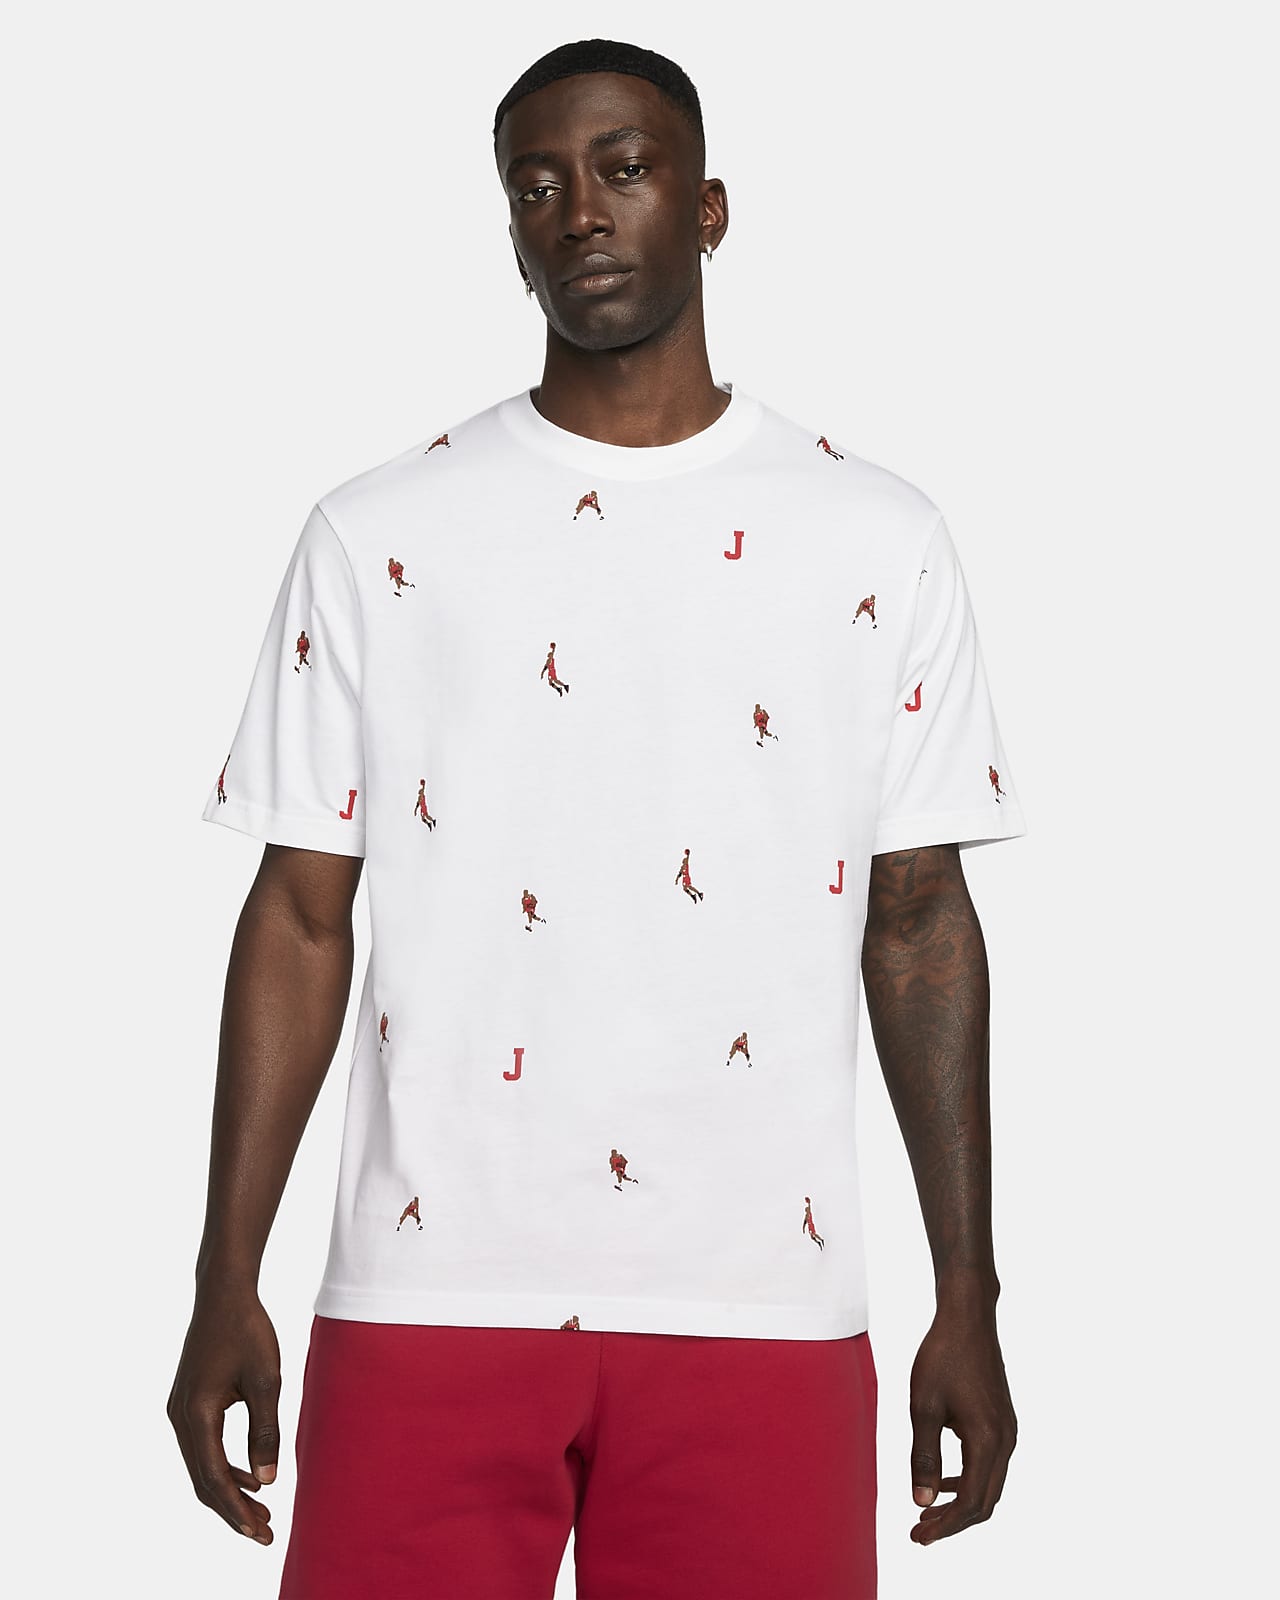 Jordan Brand Festive Men's Short-Sleeve All-over Print T-Shirt